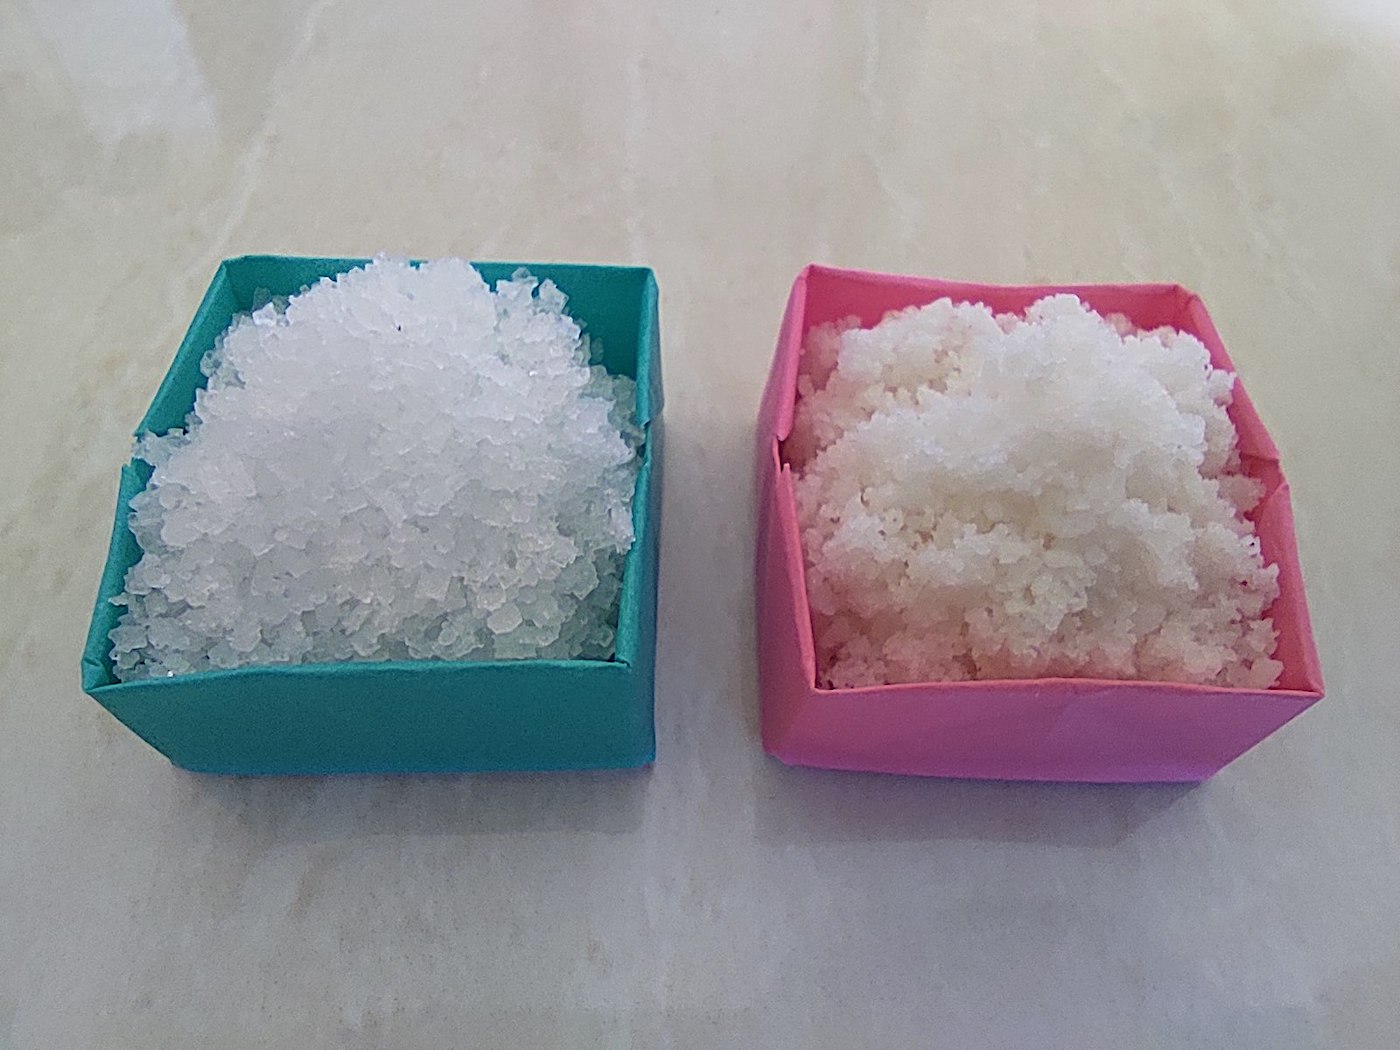 クサンバの塩とスーパーの塩の拡大写真